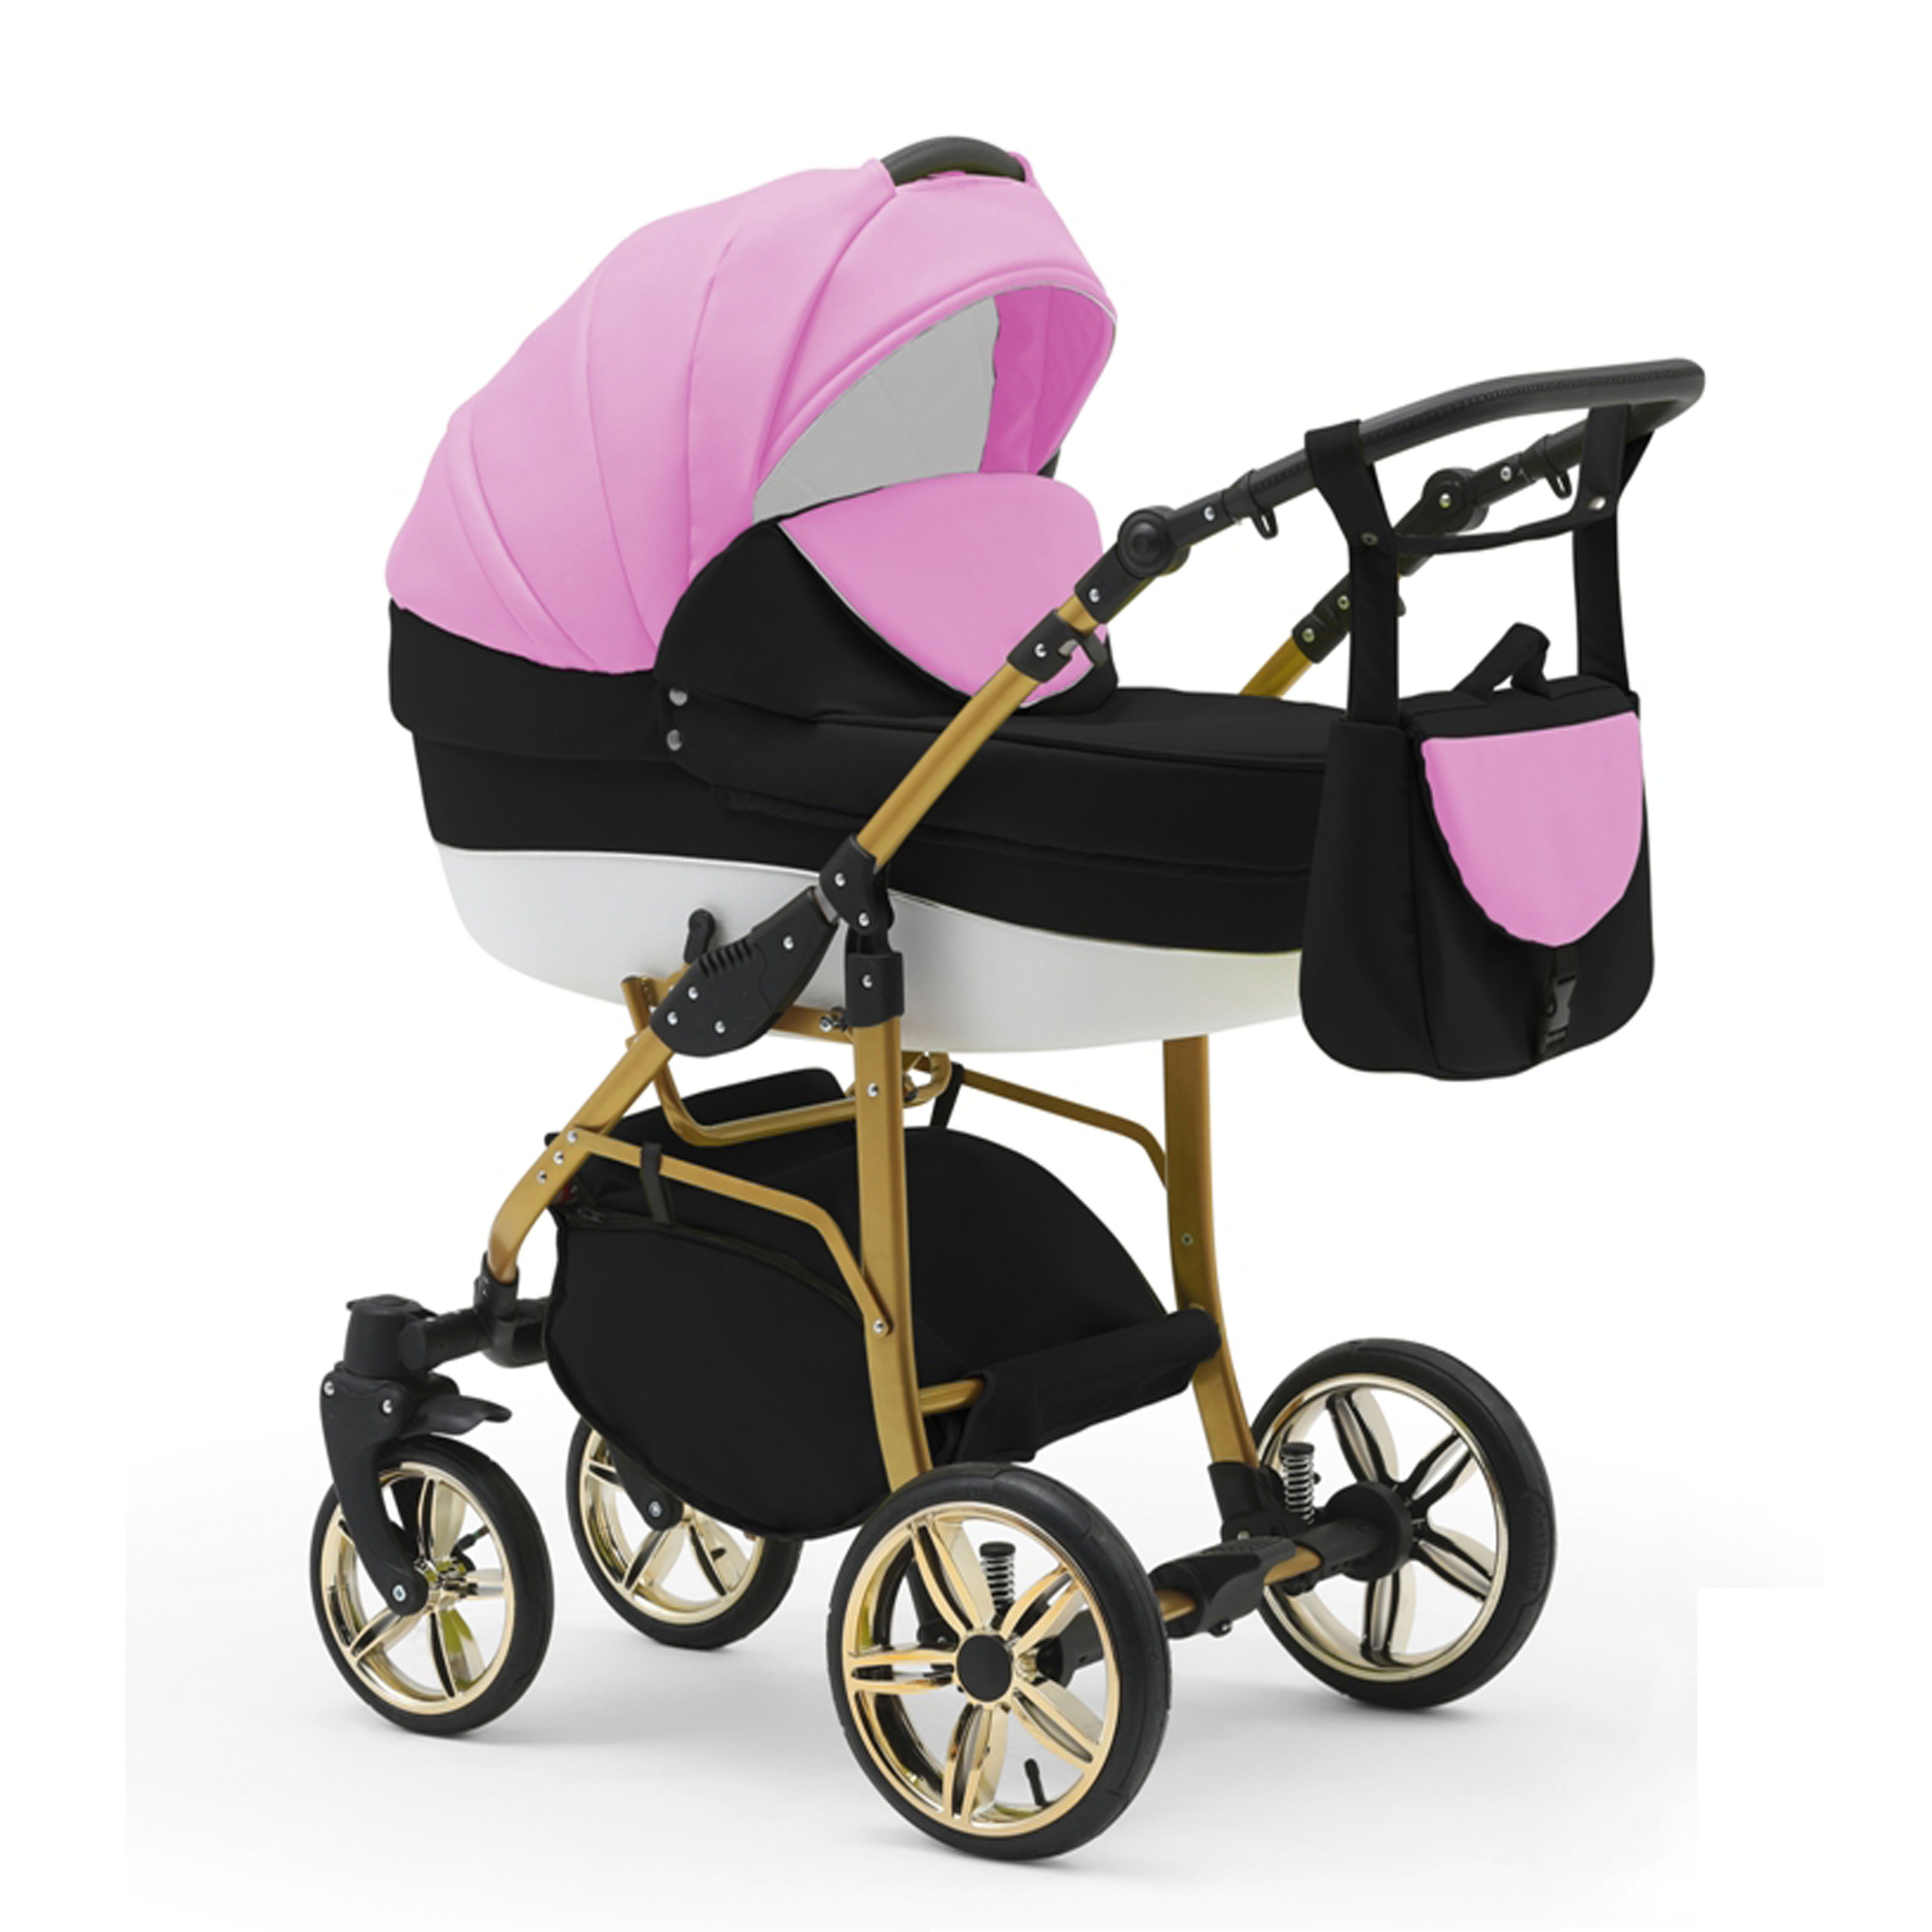 babies-on-wheels 2 13 - Teile Kombi-Kinderwagen in in 1 - 46 Gold Cosmo Farben Kinderwagen-Set Pink-Schwarz-Weiß